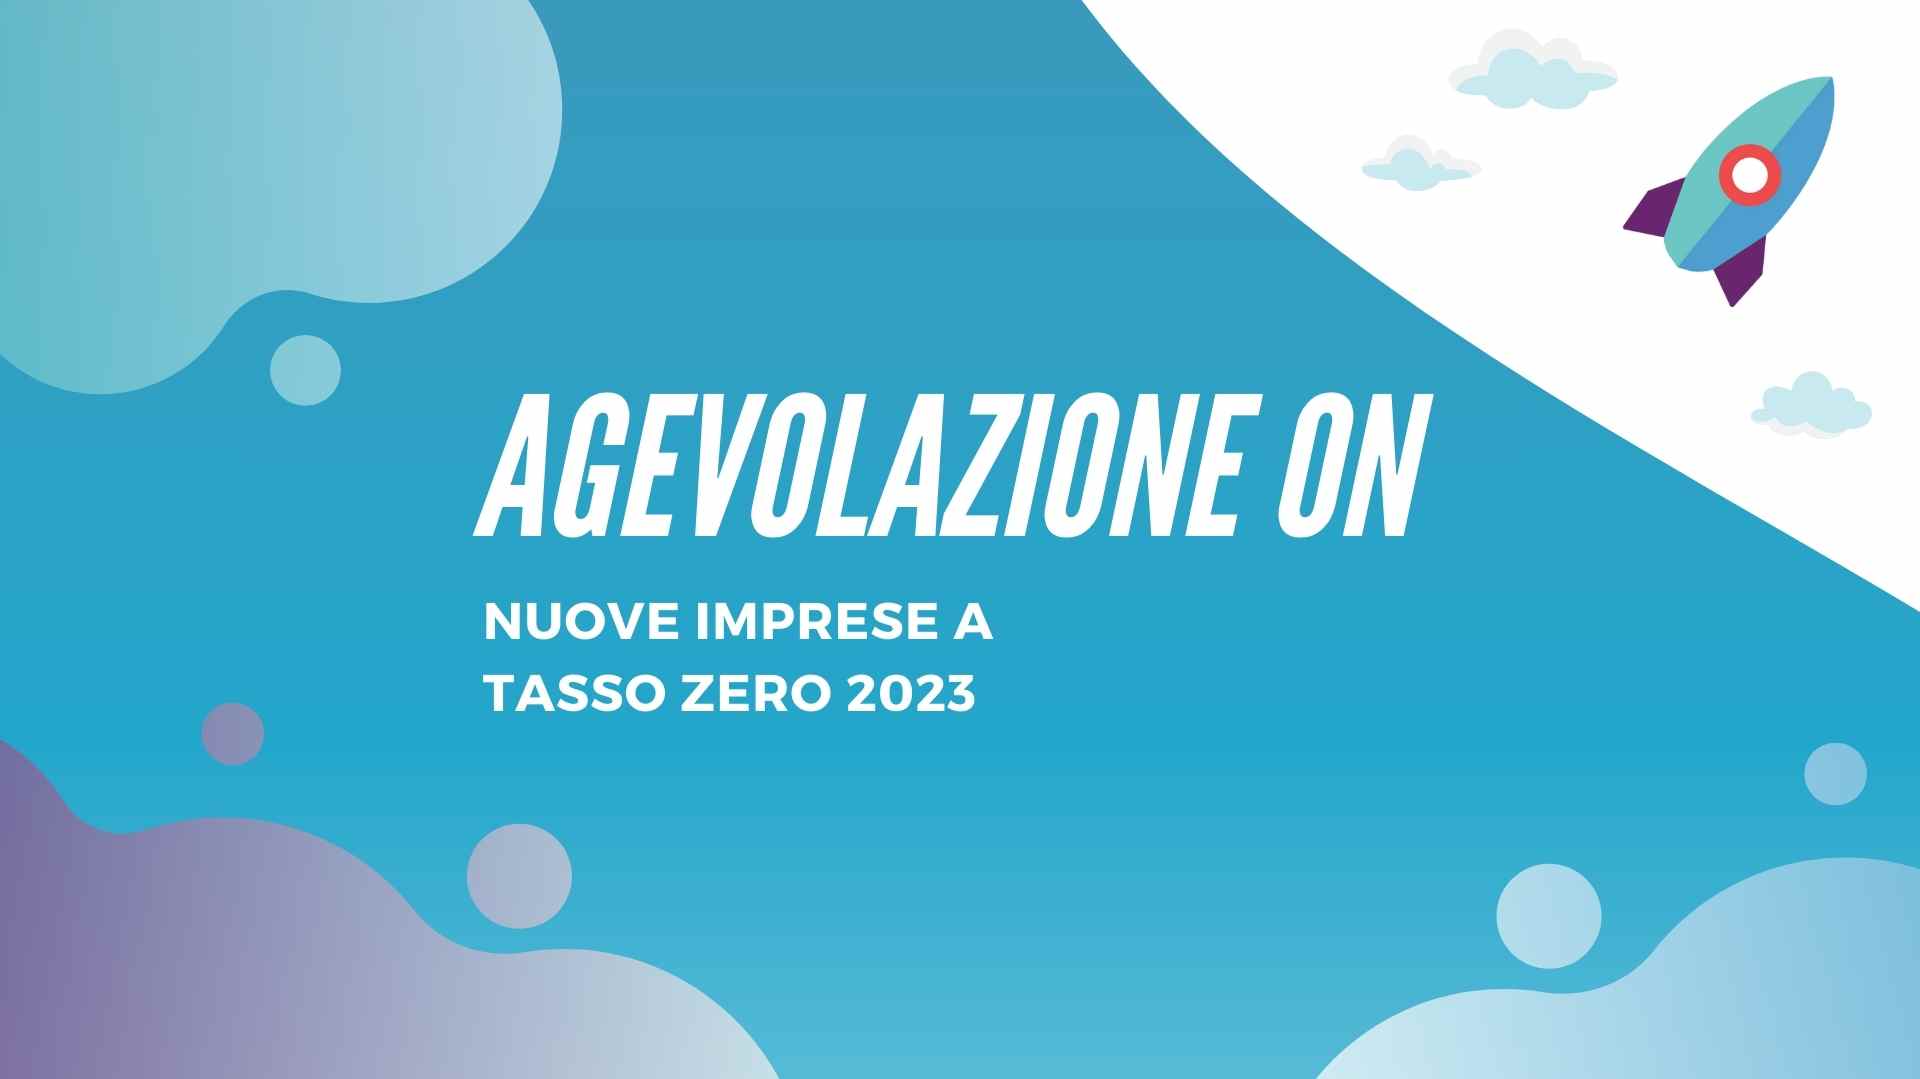 ON: Nuove Imprese a Tasso Zero 2023